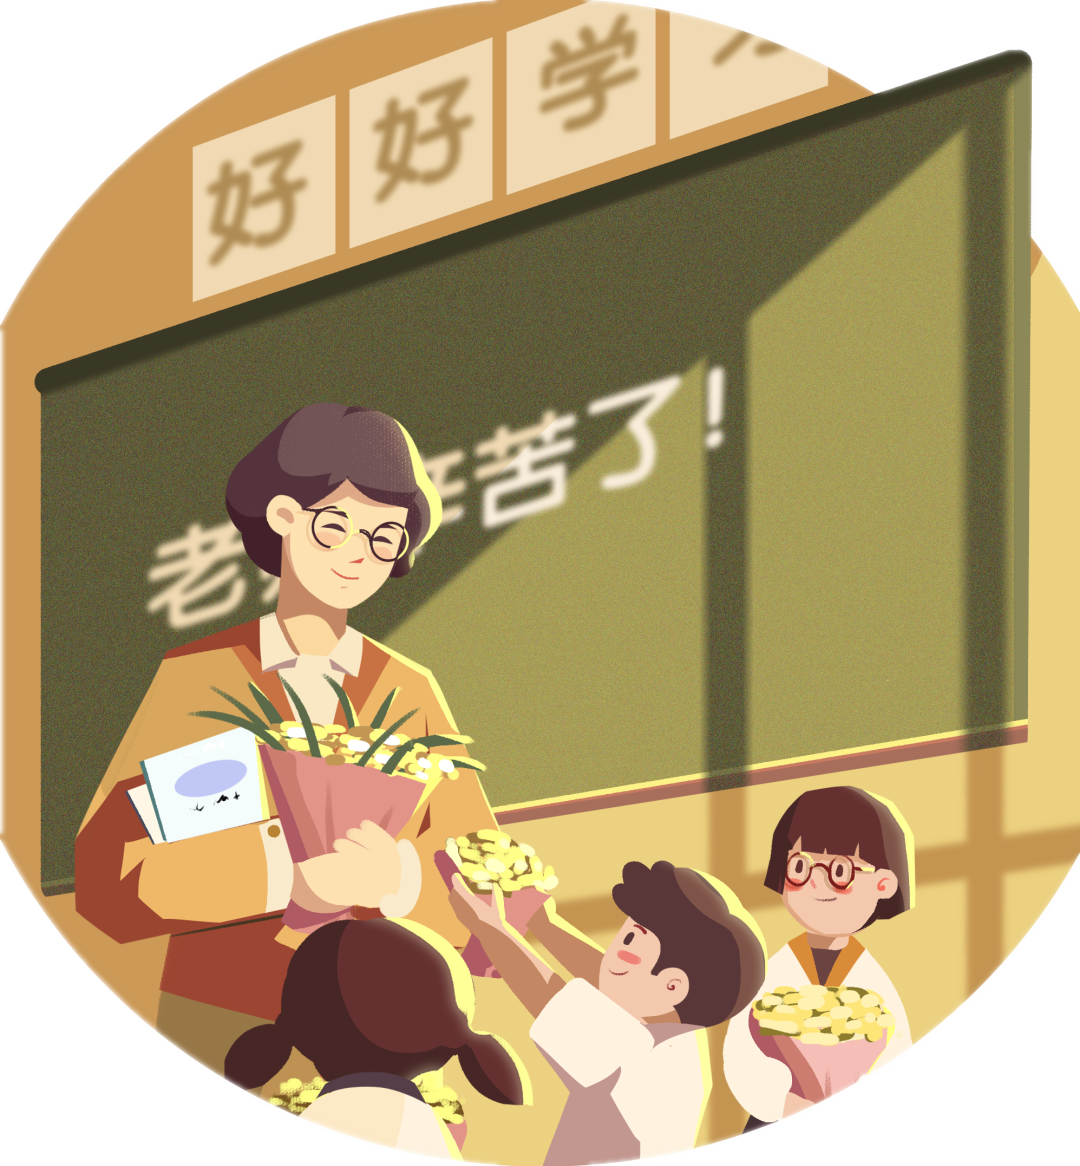 精心浇灌 情暖校园——潍坊恒德实验学校教师的“行动”与“爱”